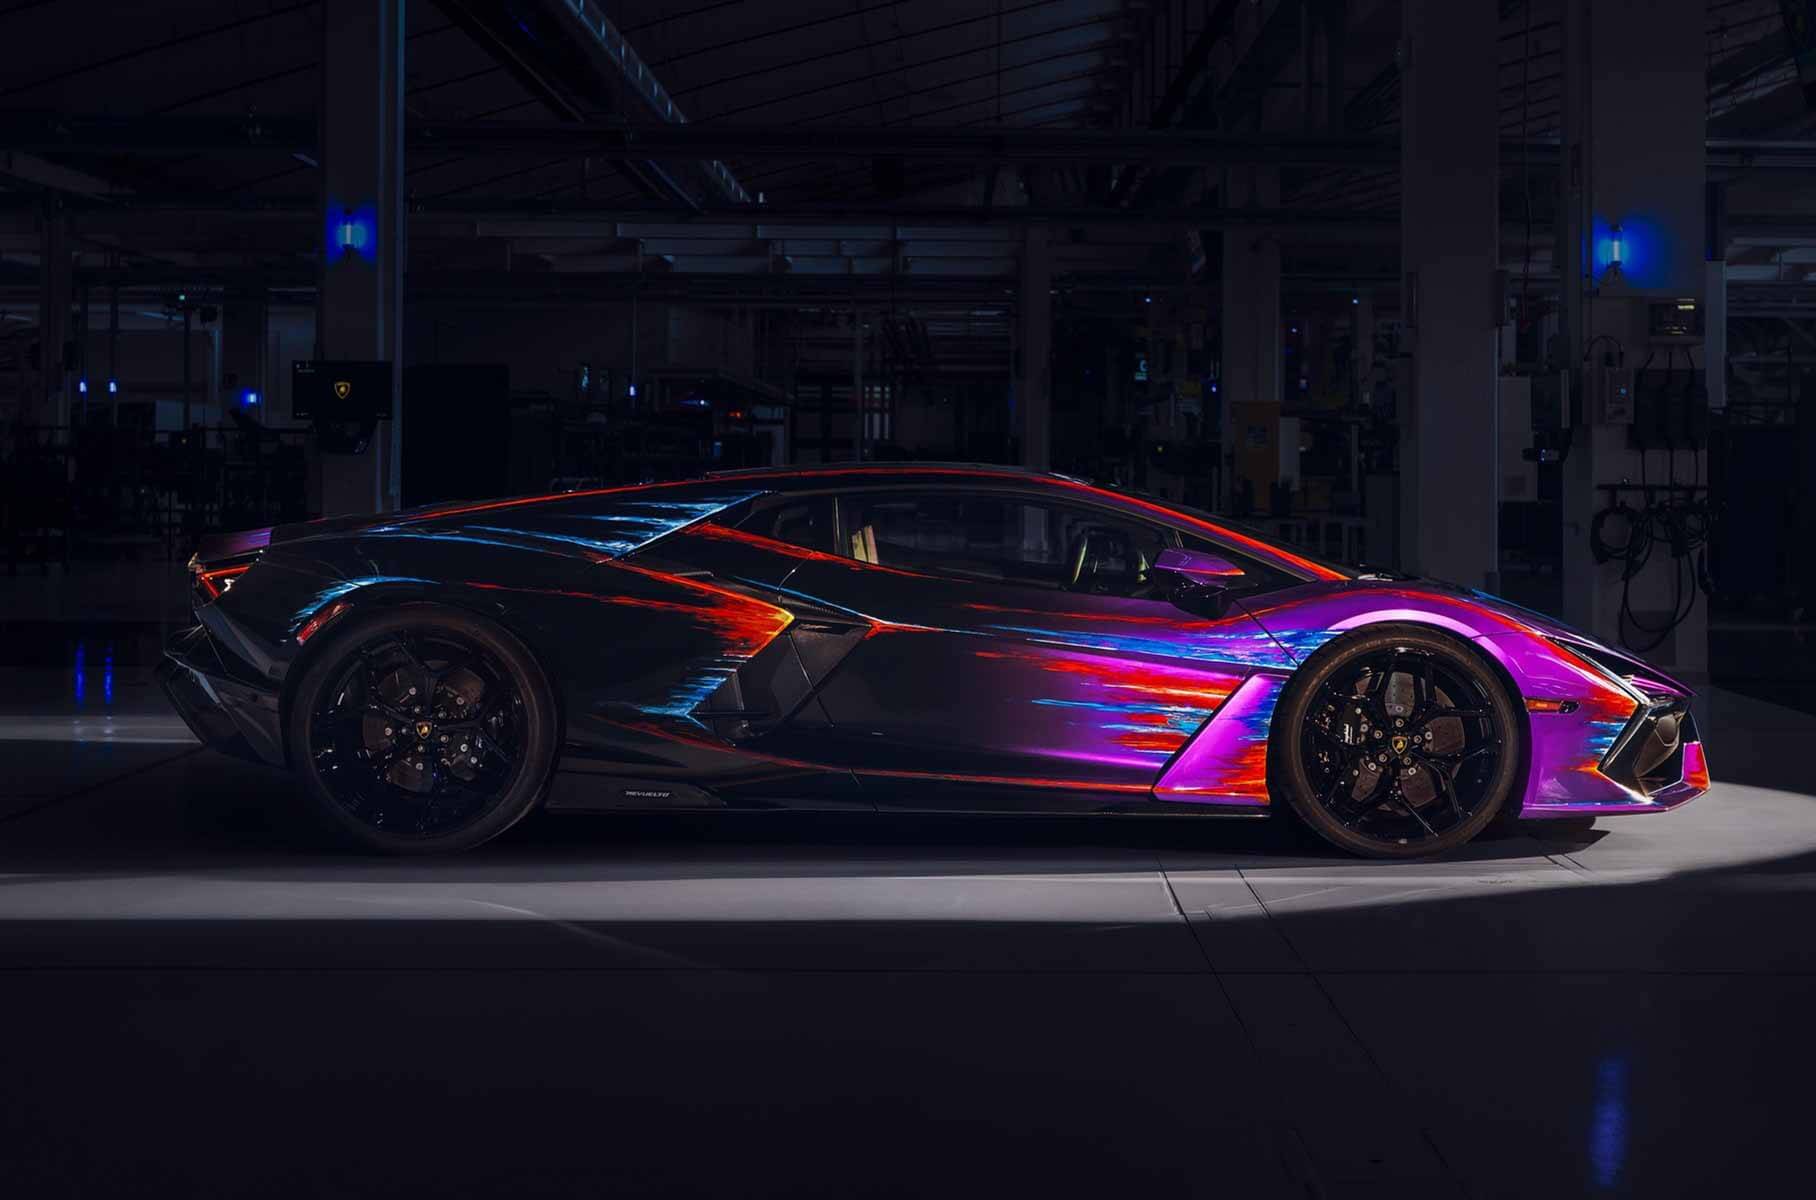 Lamborghini presented an art version of the super hybrid Revuelto